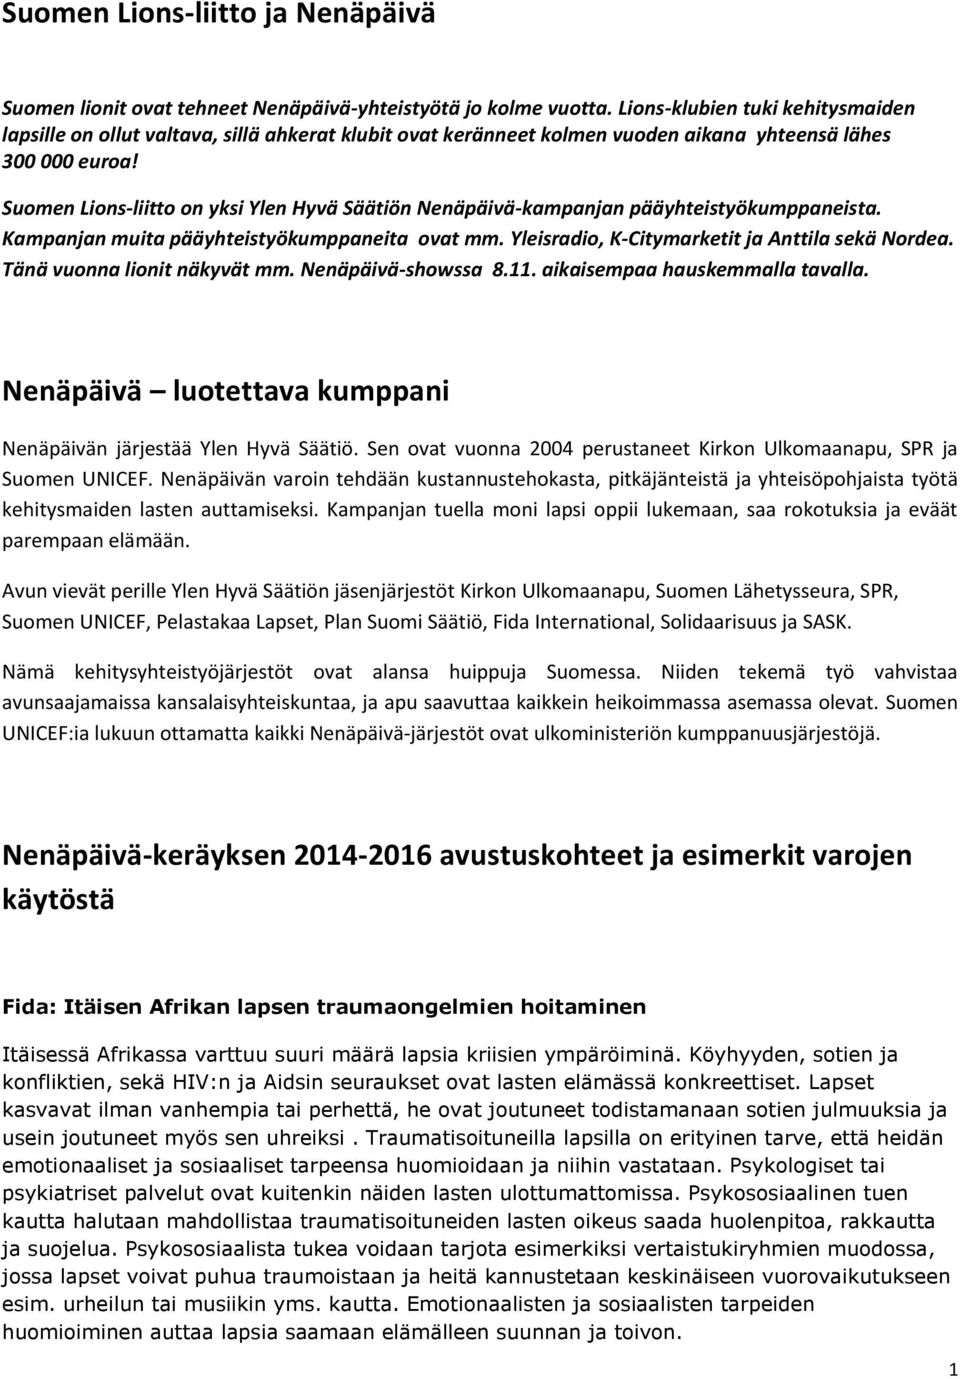 Suomen Lions-liitto on yksi Ylen Hyvä Säätiön Nenäpäivä-kampanjan pääyhteistyökumppaneista. Kampanjan muita pääyhteistyökumppaneita ovat mm. Yleisradio, K-Citymarketit ja Anttila sekä Nordea.